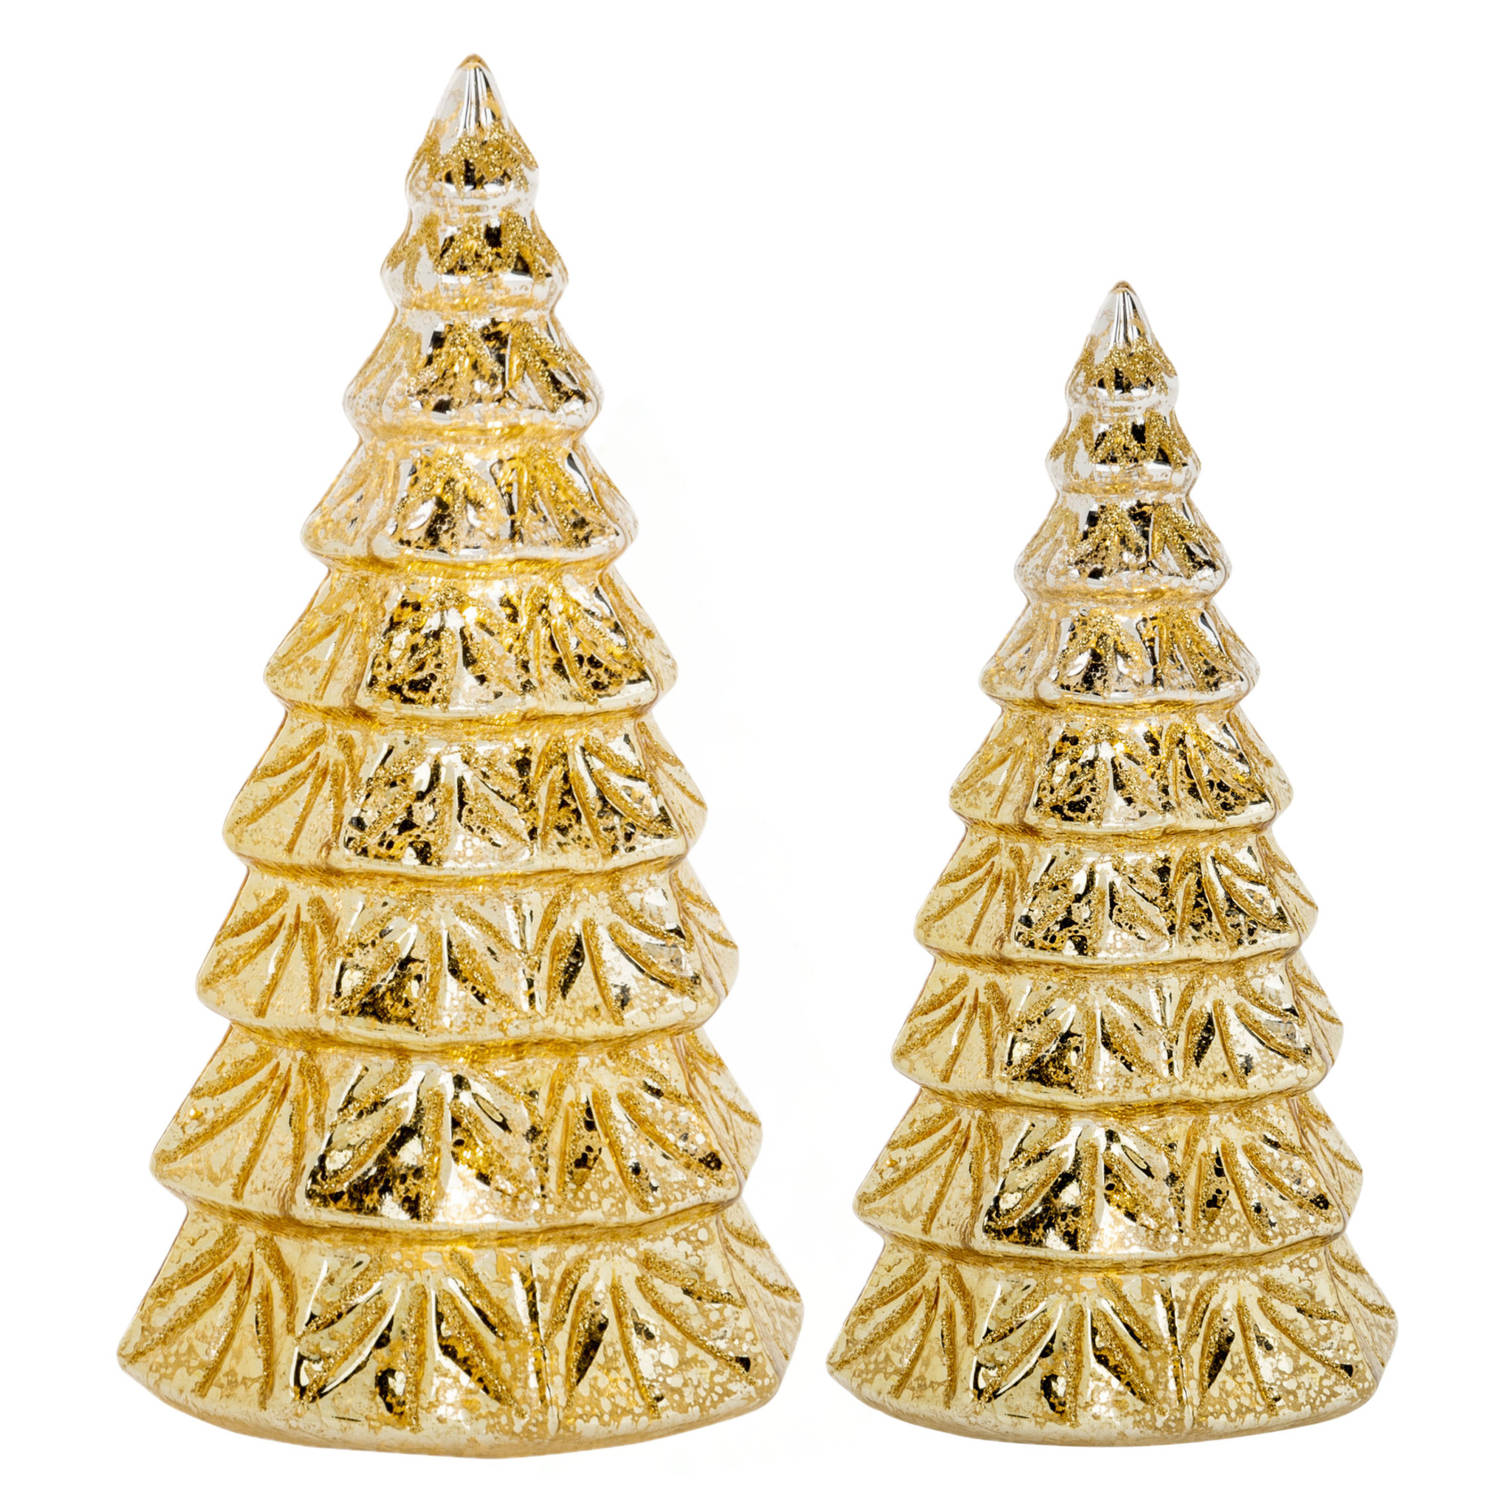 2x stuks led kaarsen kerstboom kaarsen goud H15 cm en H19 cm LED kaarsen